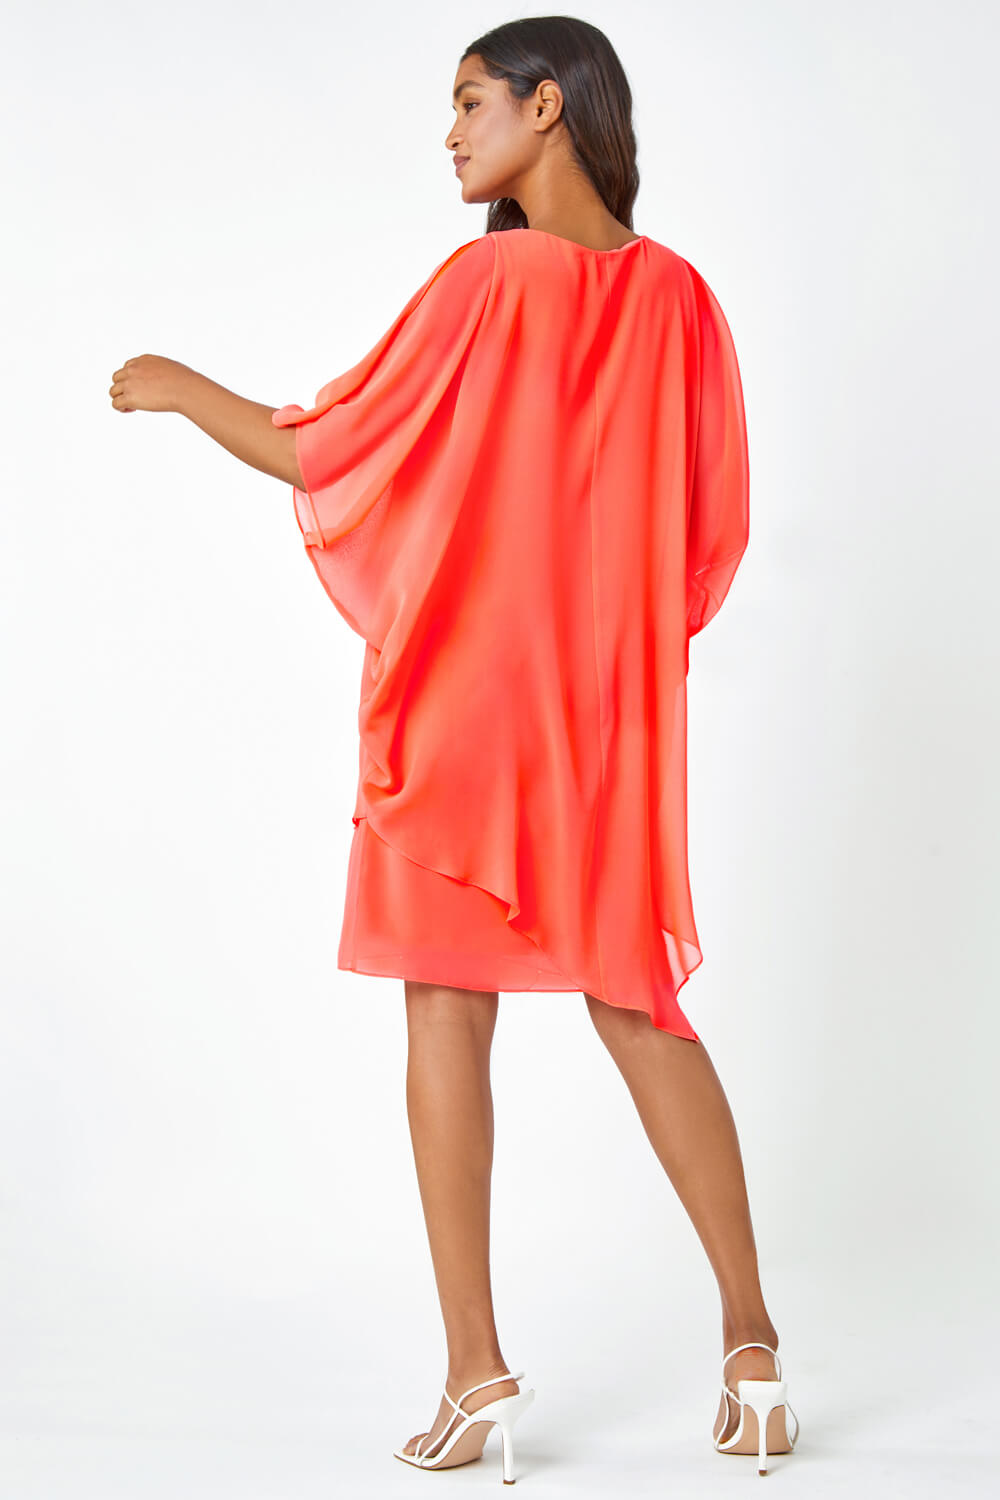 CORAL Embellished Cold Shoulder Overlay Dress, Image 3 of 5